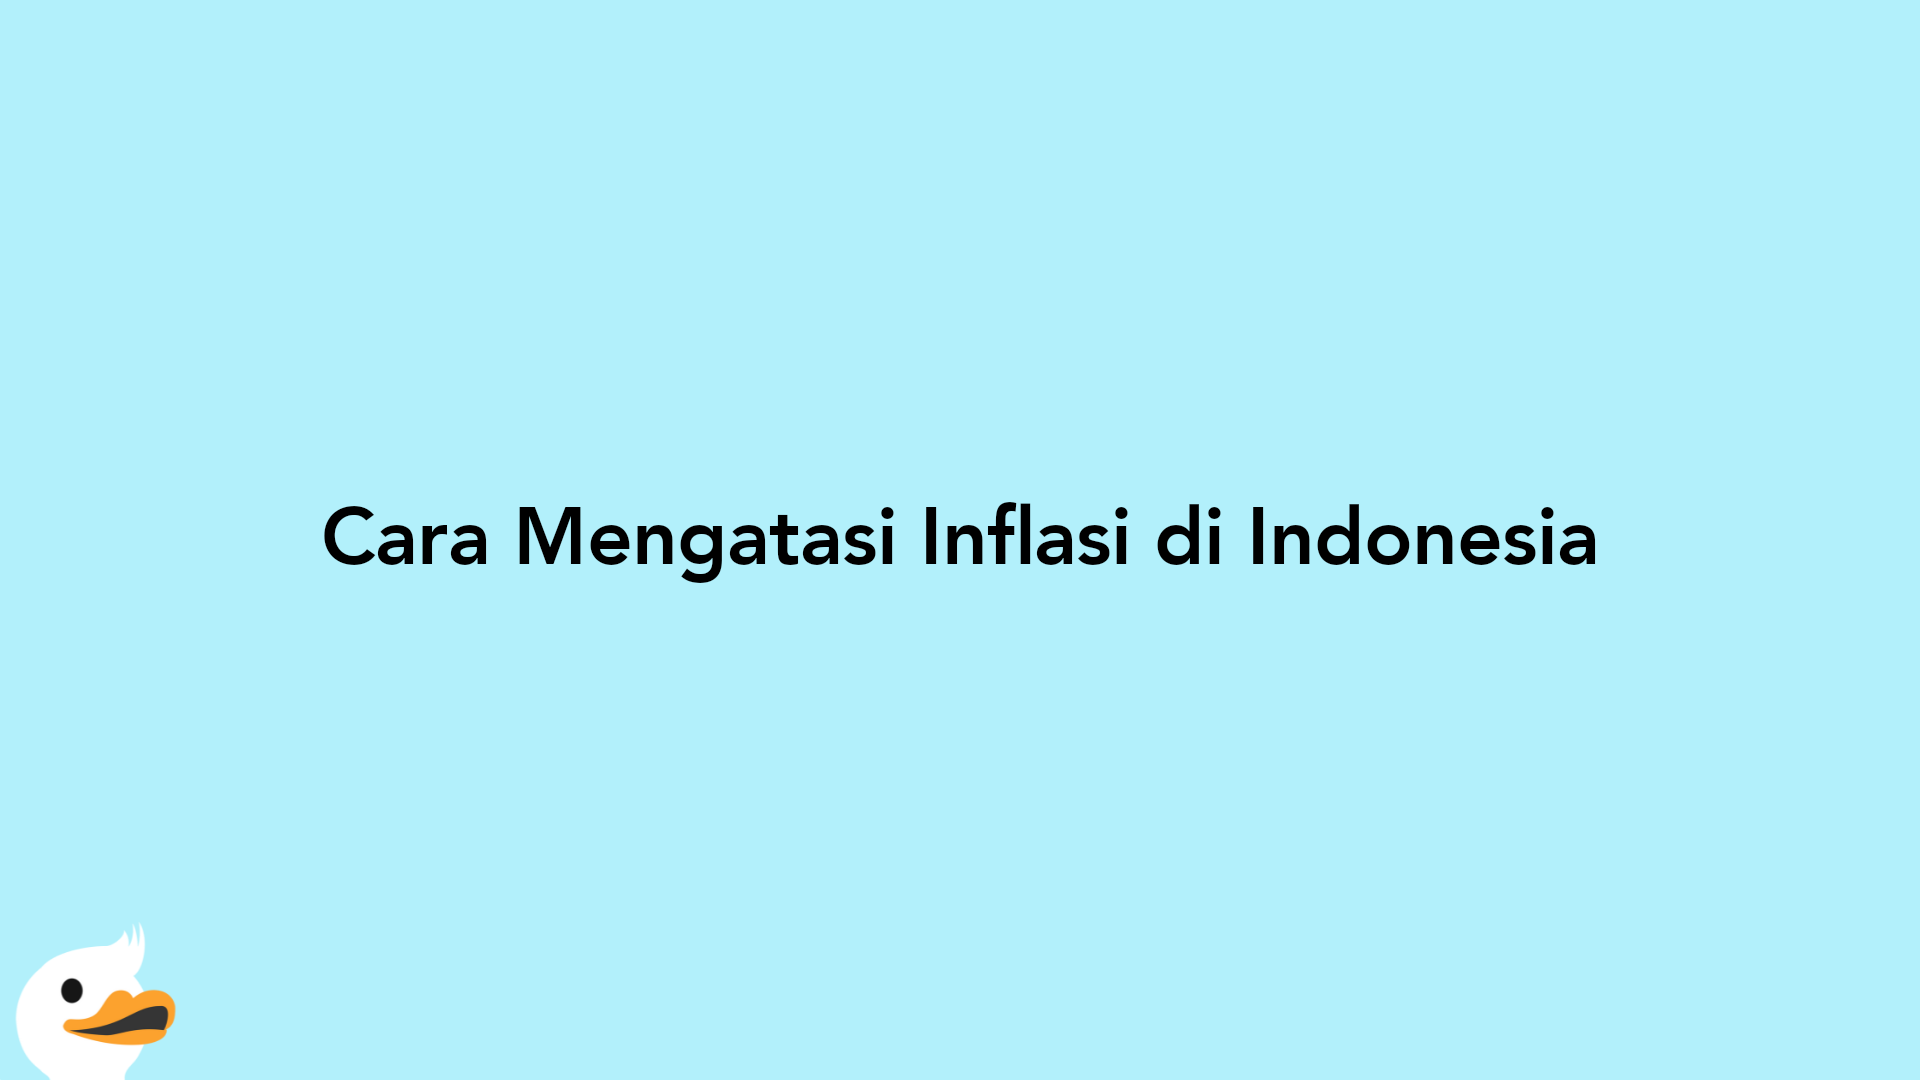 Cara Mengatasi Inflasi di Indonesia